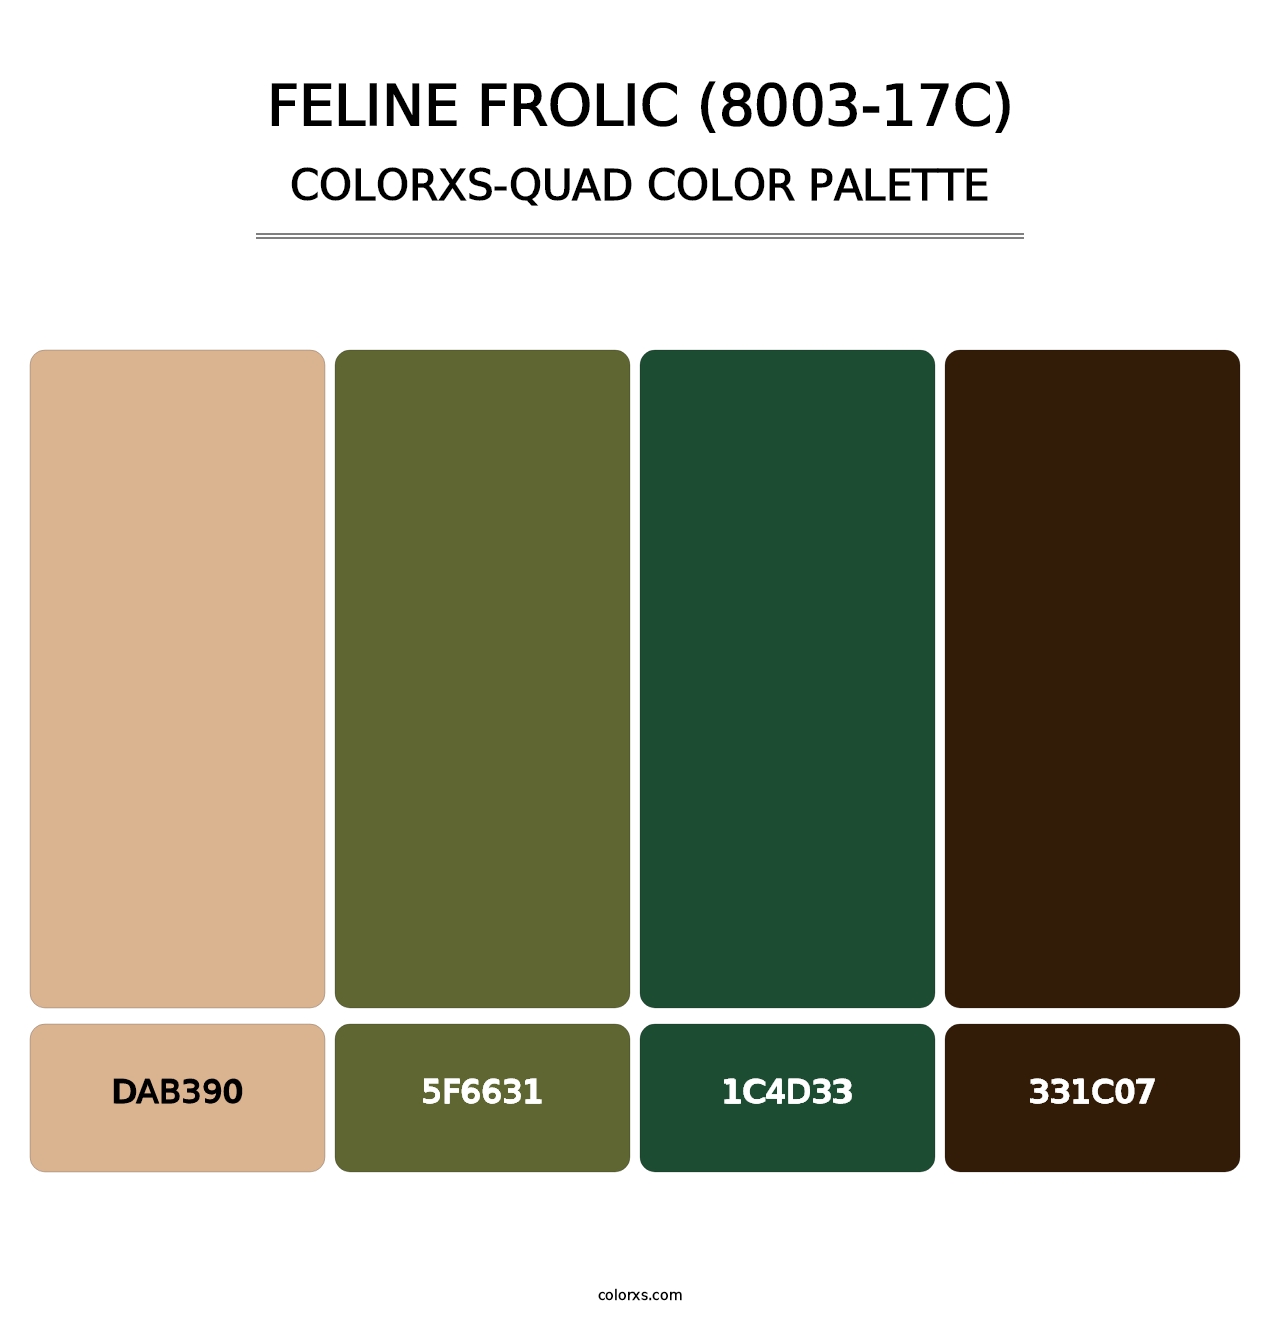 Feline Frolic (8003-17C) - Colorxs Quad Palette